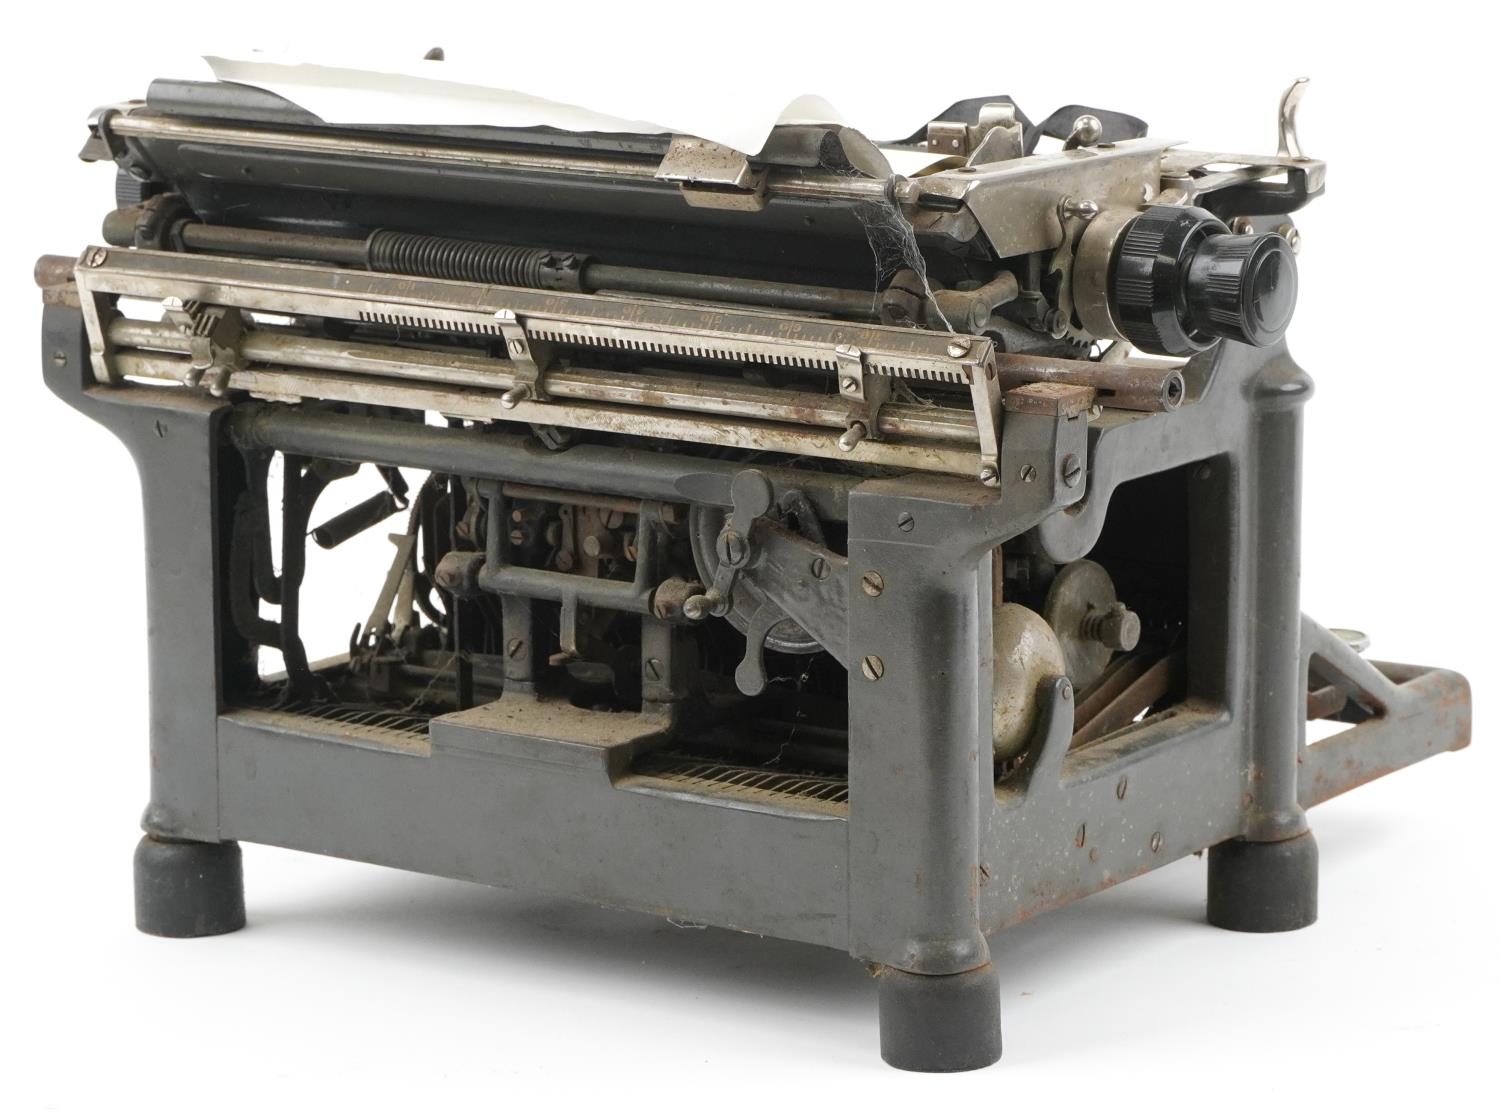 Vintage Underwood typewriter, 35cm wide - Image 3 of 3